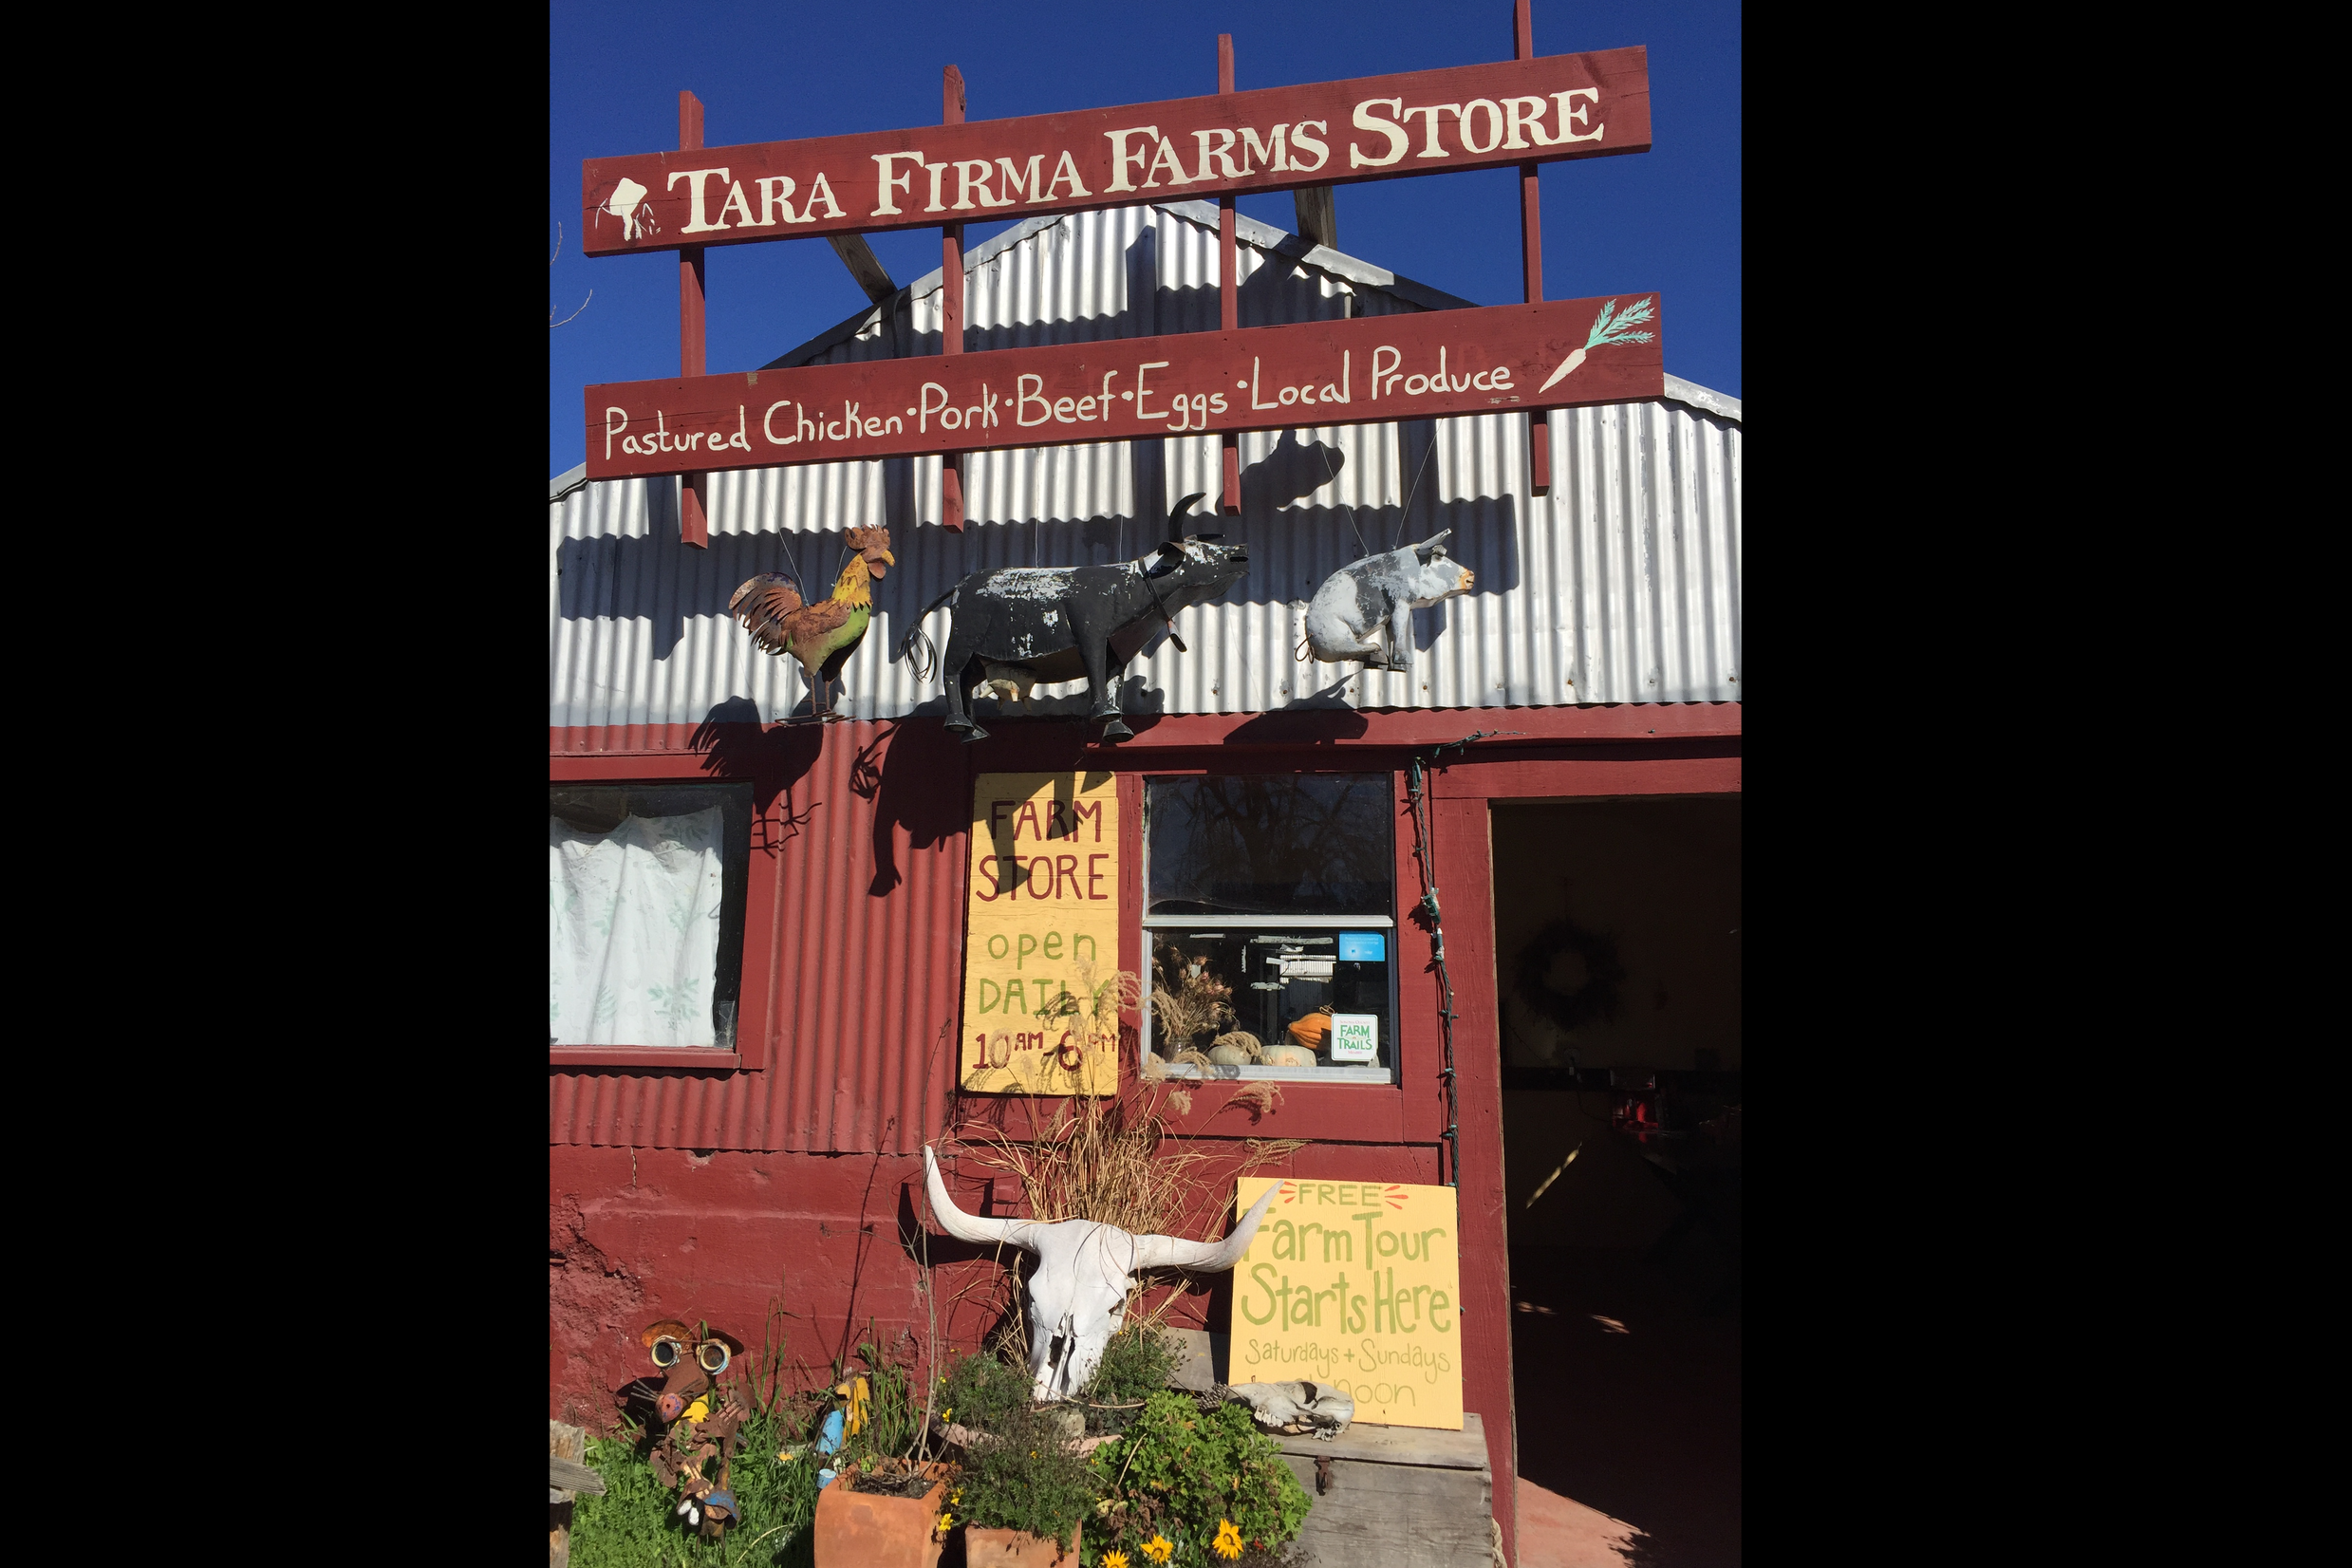 Next stop: Tara Firma Farms